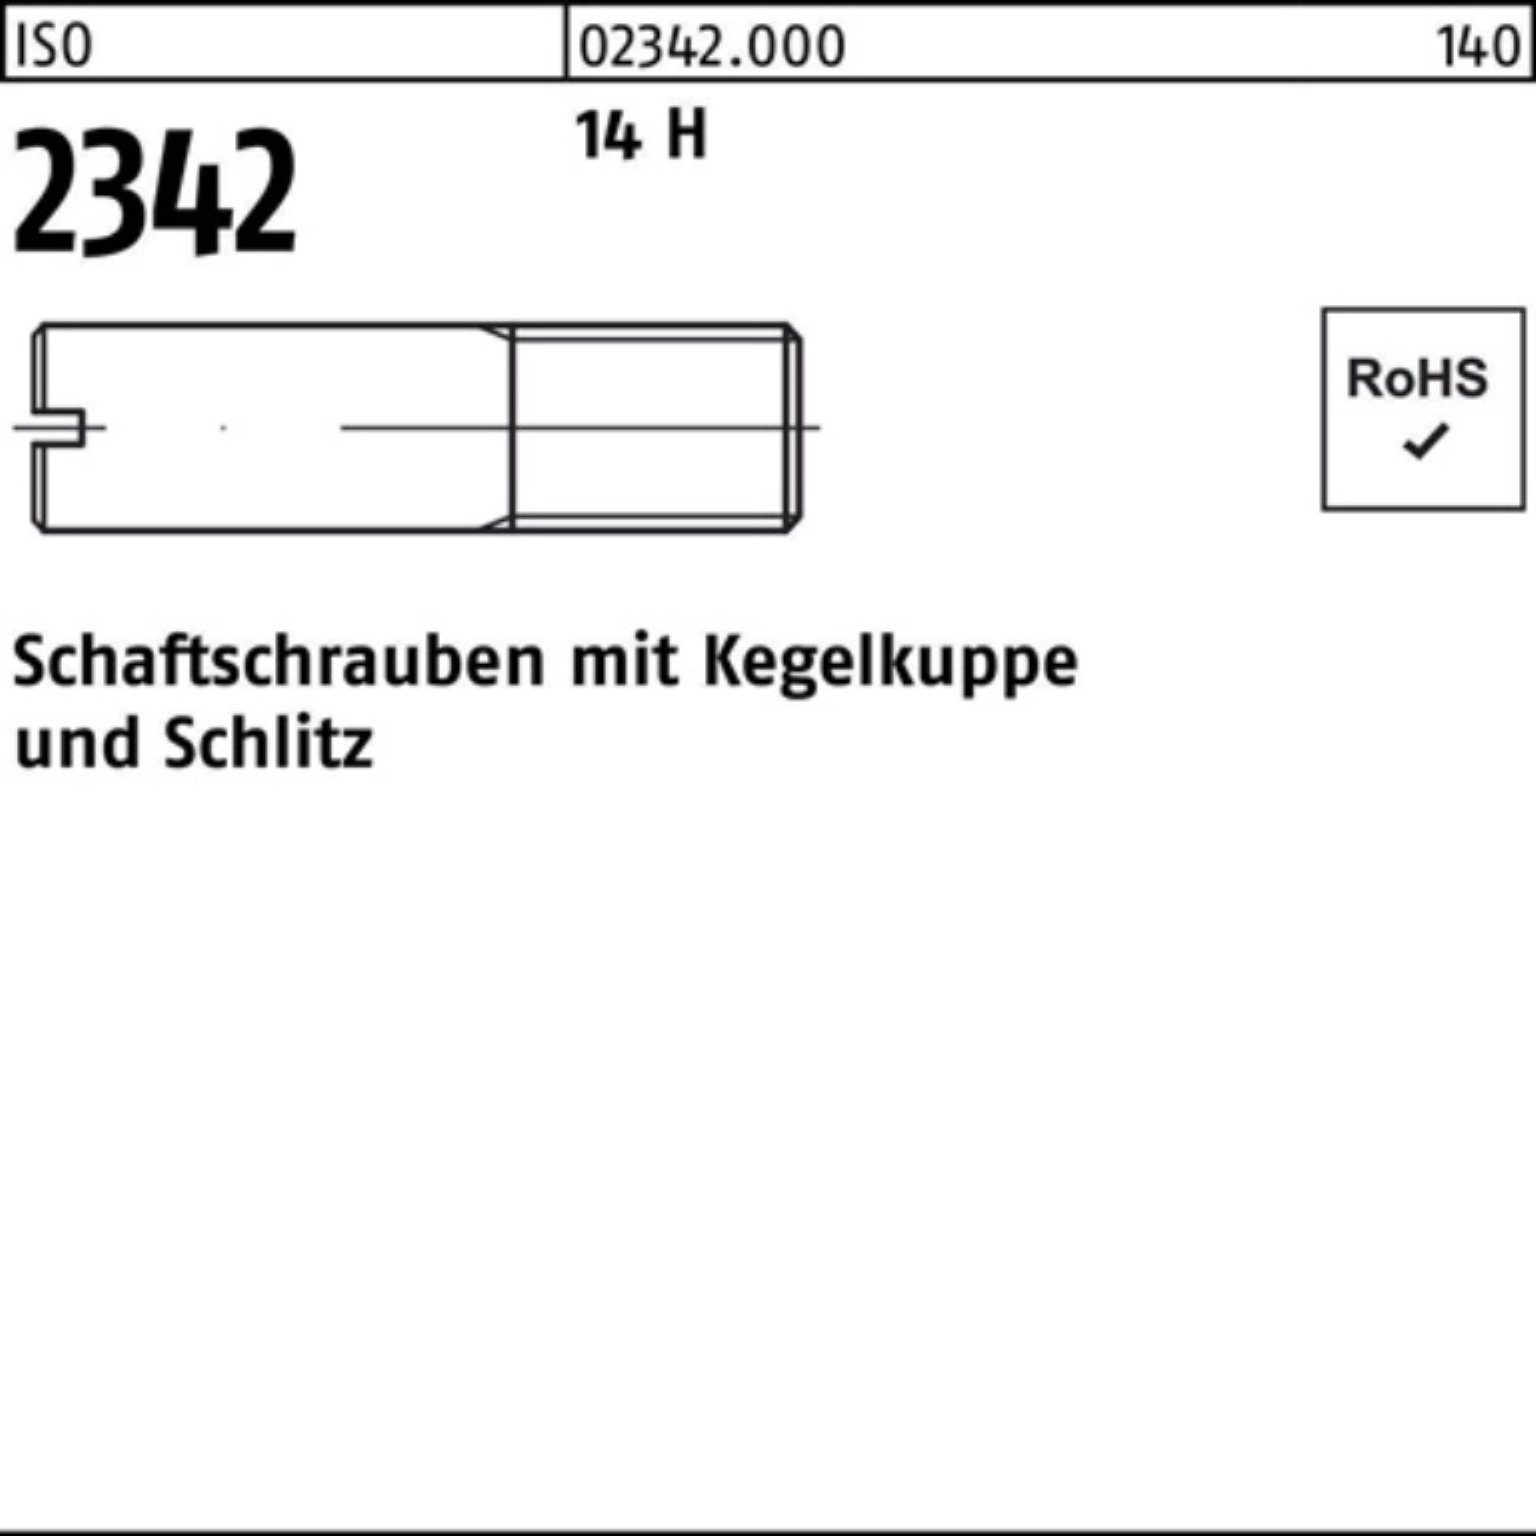 Reyher Schraube 100er Pack Schaftschraube ISO 2342 Kegelkuppe/Schlitz M6x 12 14 H 100